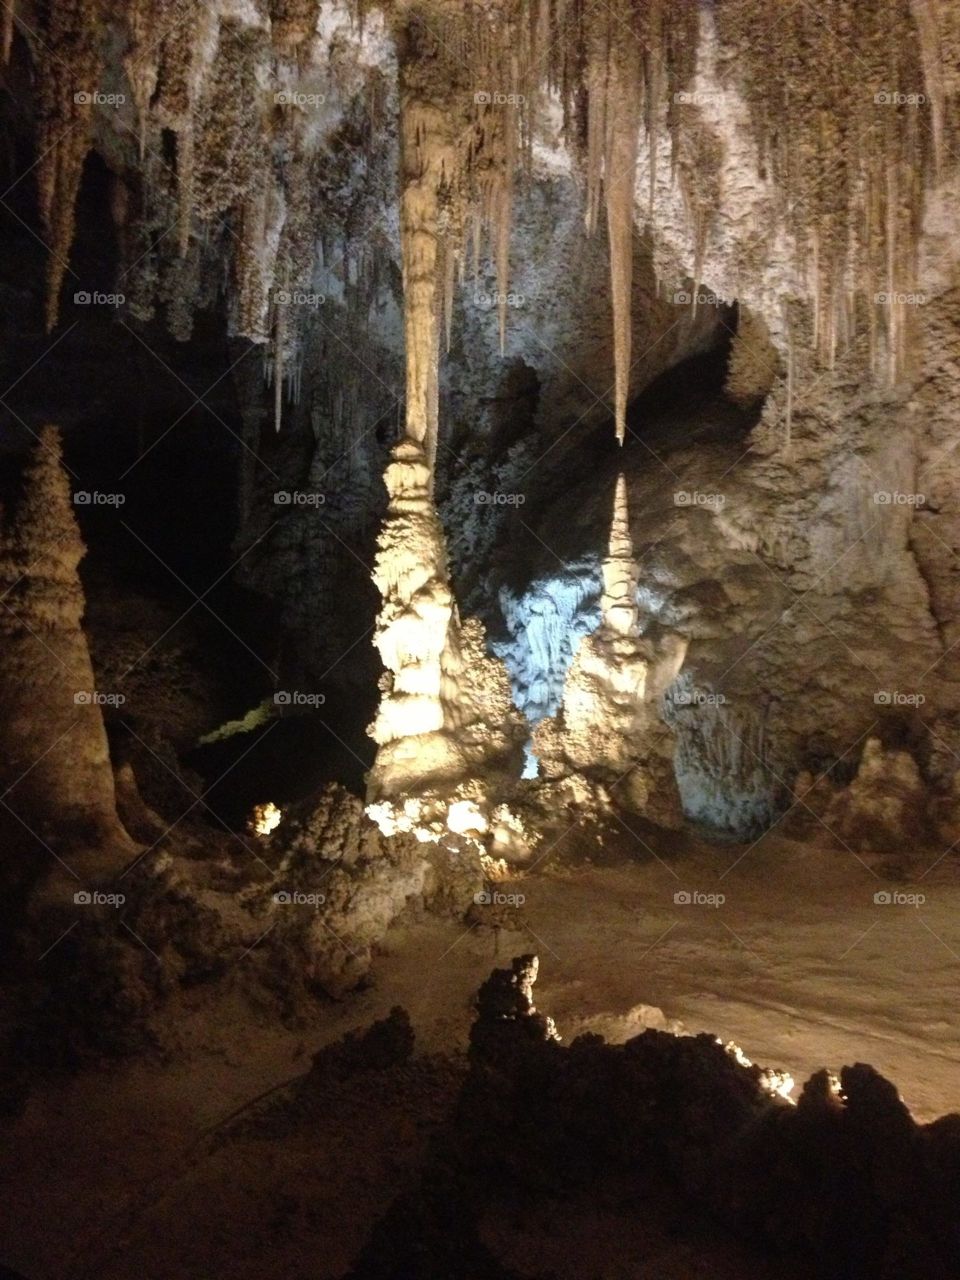 Carlsbad . Inside Carlsbad Caverns